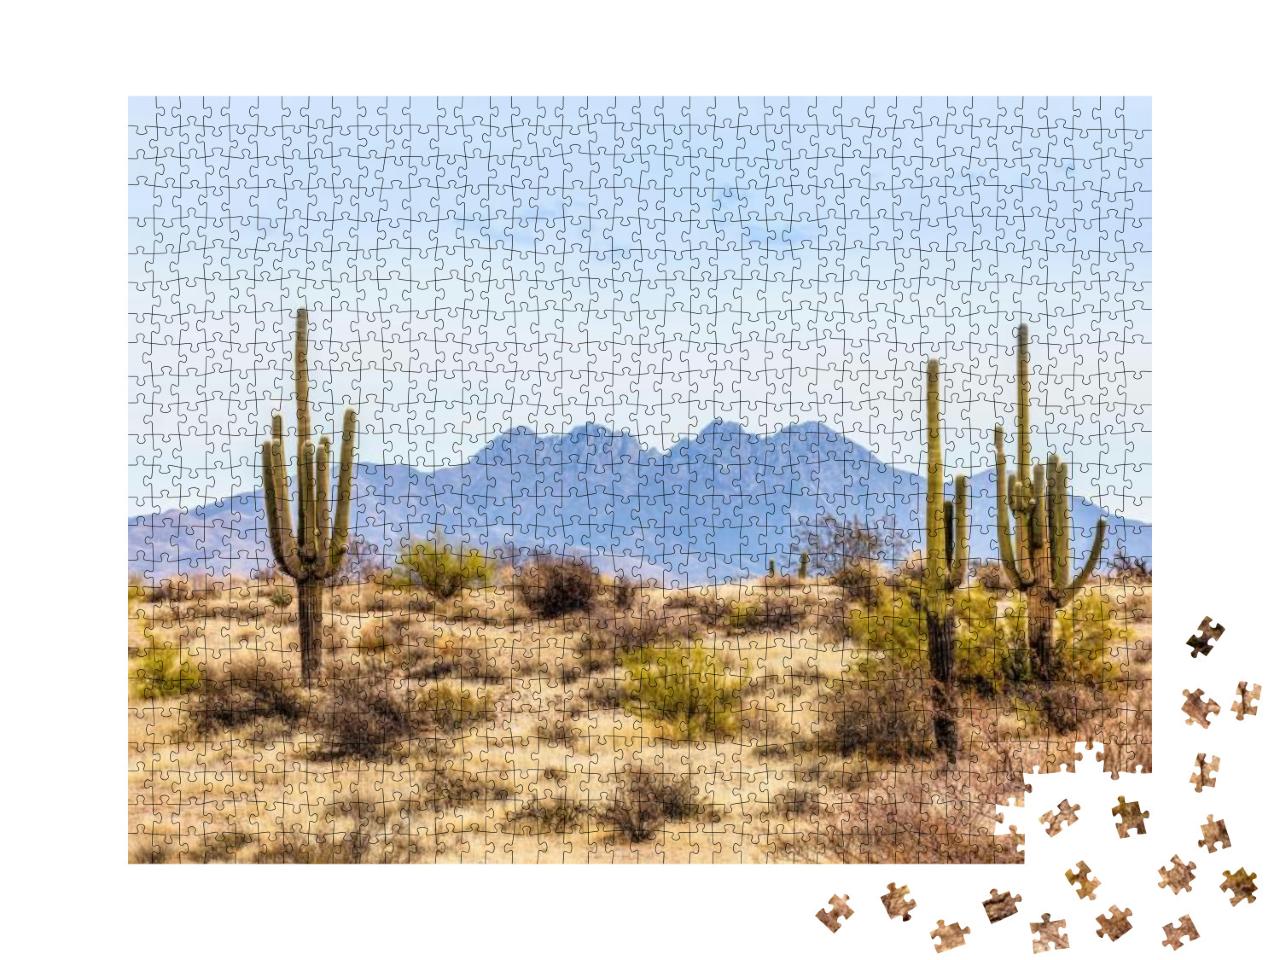 Puzzle 1000 Teile „Four Peaks, Wahrzeichen der Mazatzal Mountains in Phoenix, Arizona“